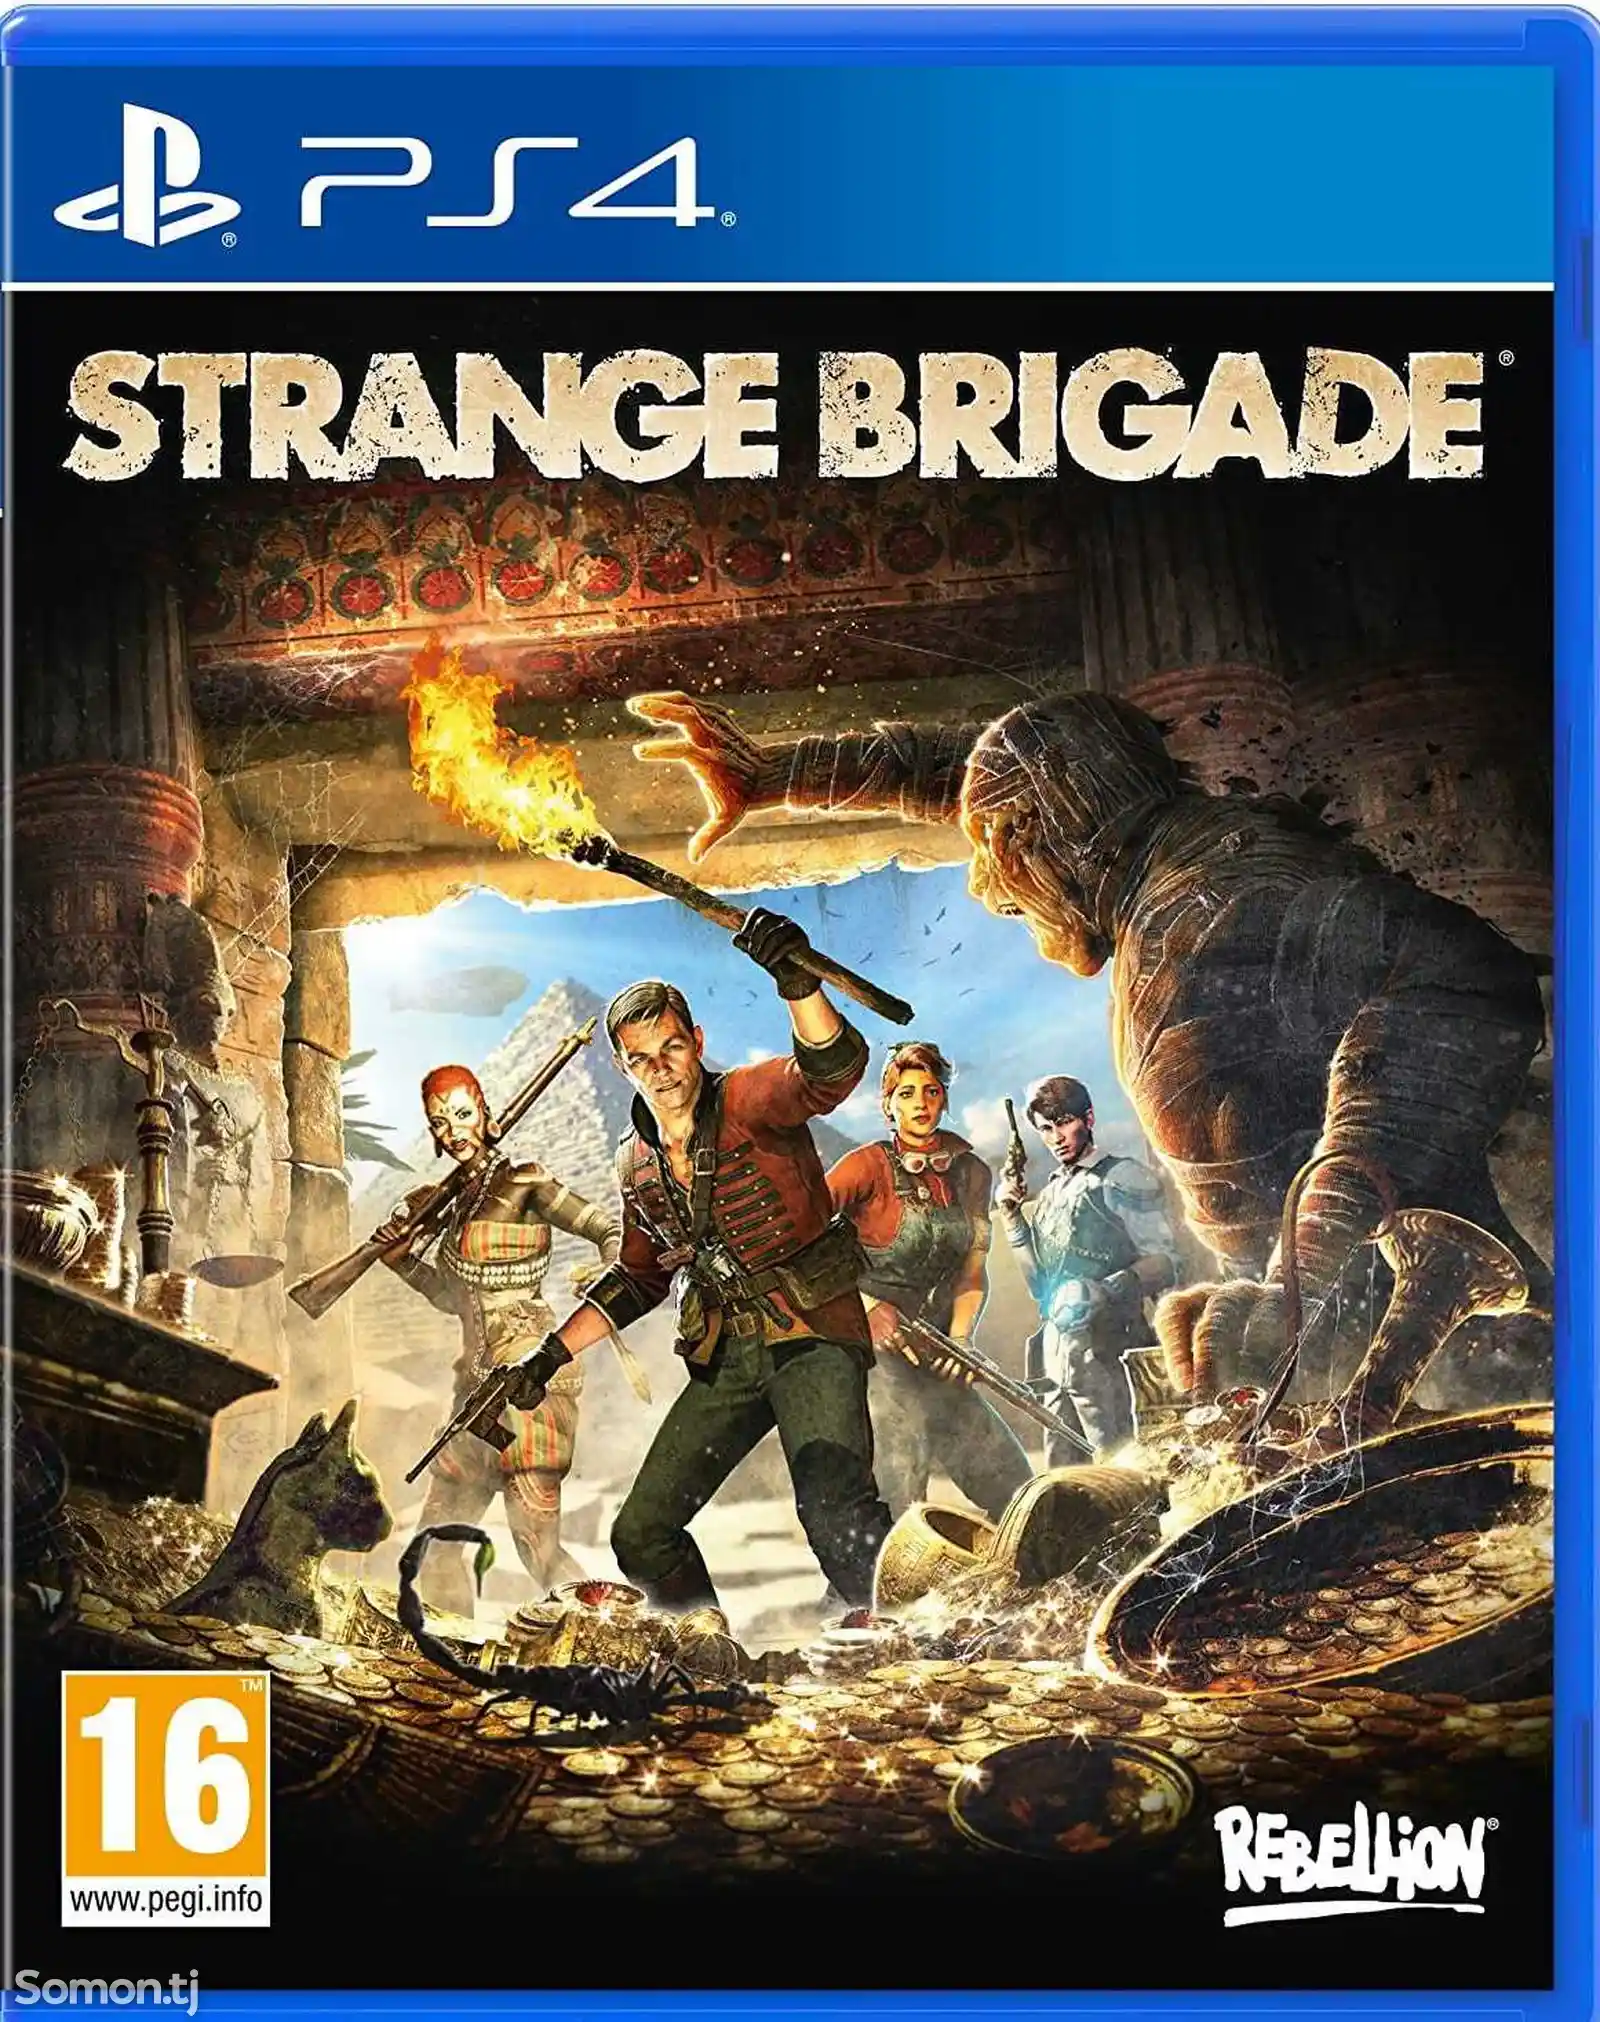 Игра Strange drigade для PS-4 / 5.05 / 6.72 / 7.02 / 7.55 / 9.00 /-1